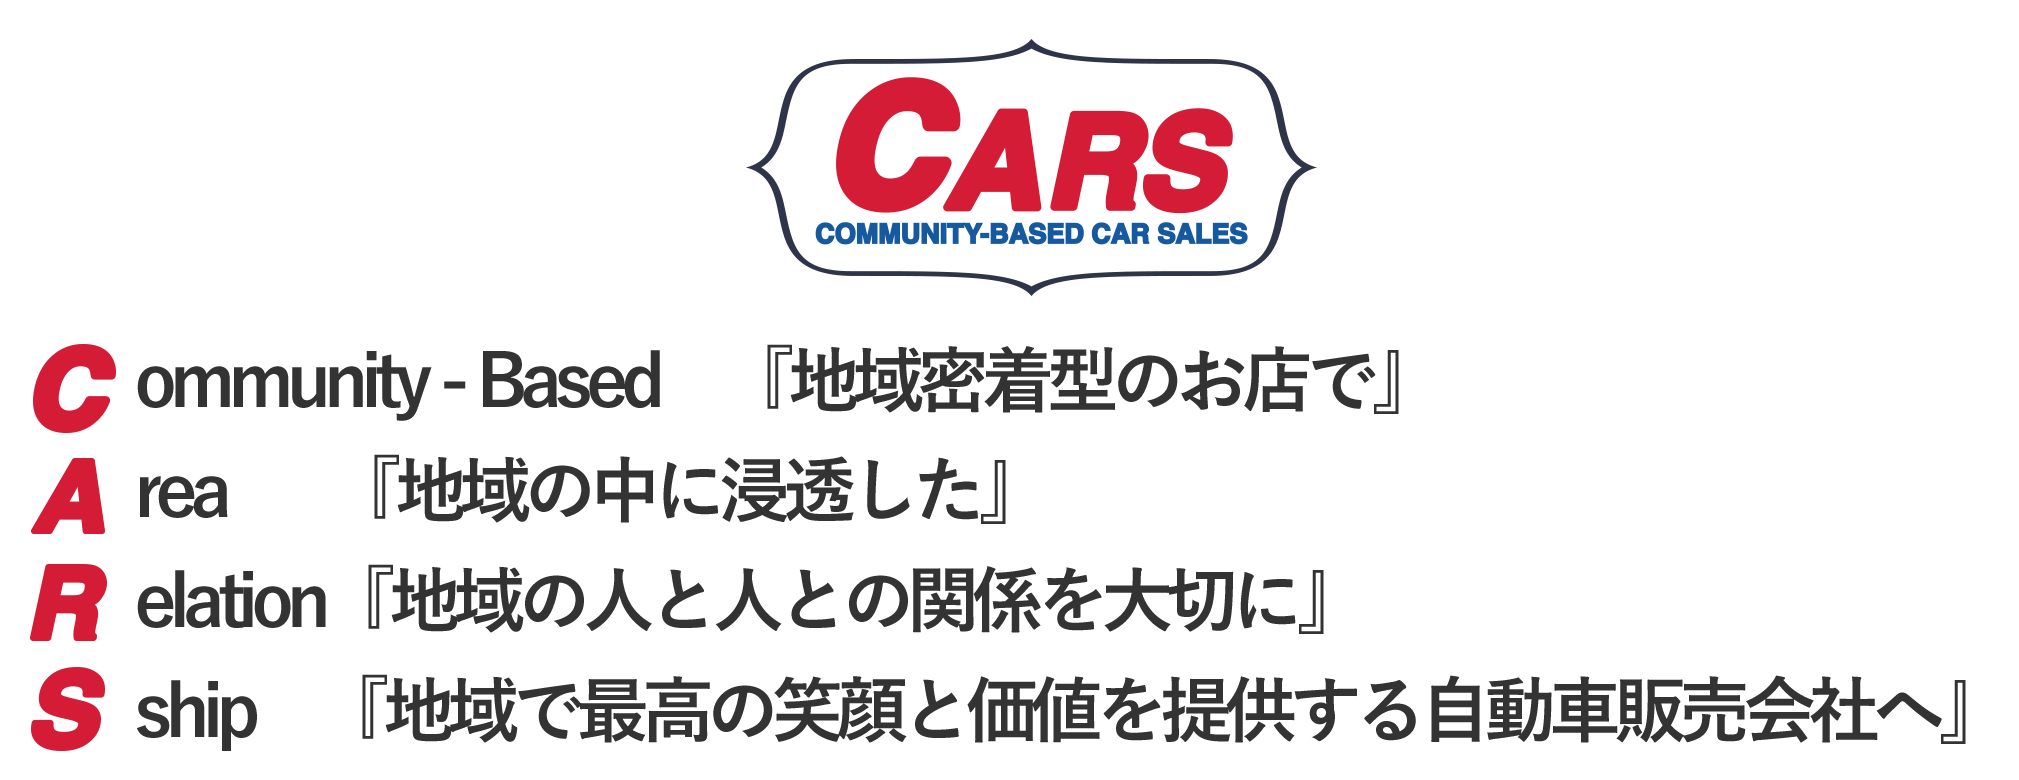 Cars 立川店 東京都立川市の中古車販売店 Cars立川店